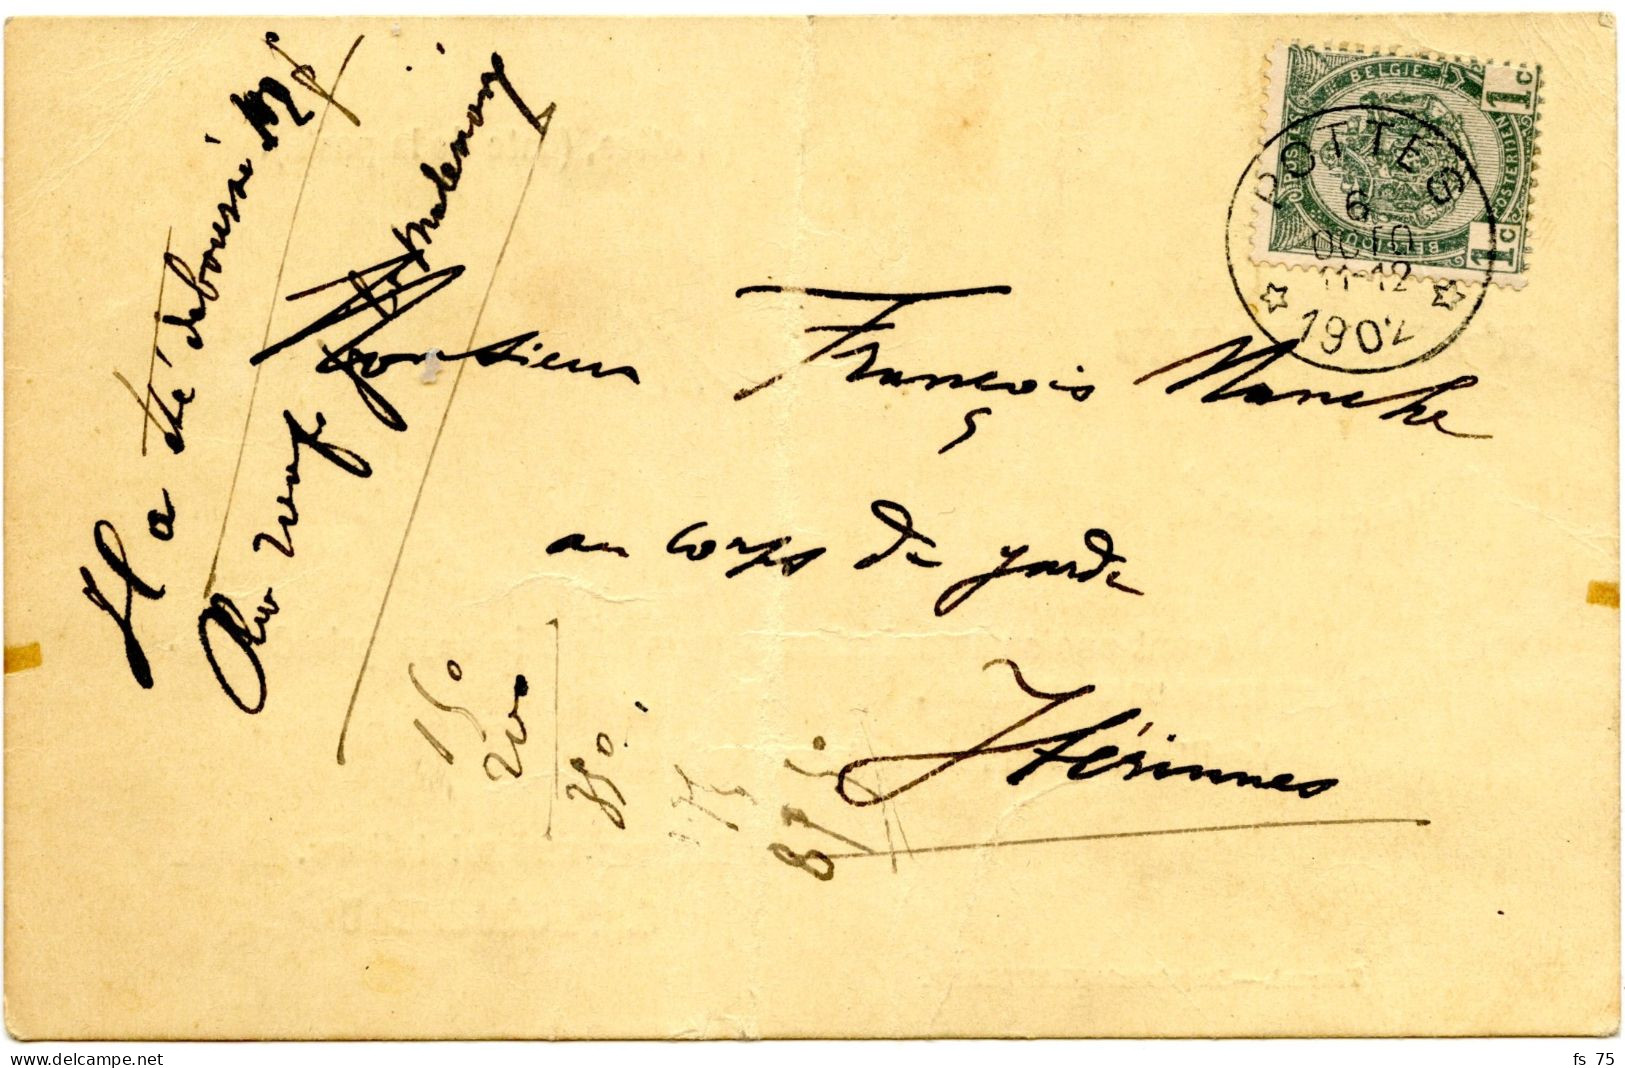 BELGIQUE - COB 53 SIMPLE CERCLE RELAIS A ETOILES POTTES SUR CARTE POSTALE, 1902 - Postmarks With Stars